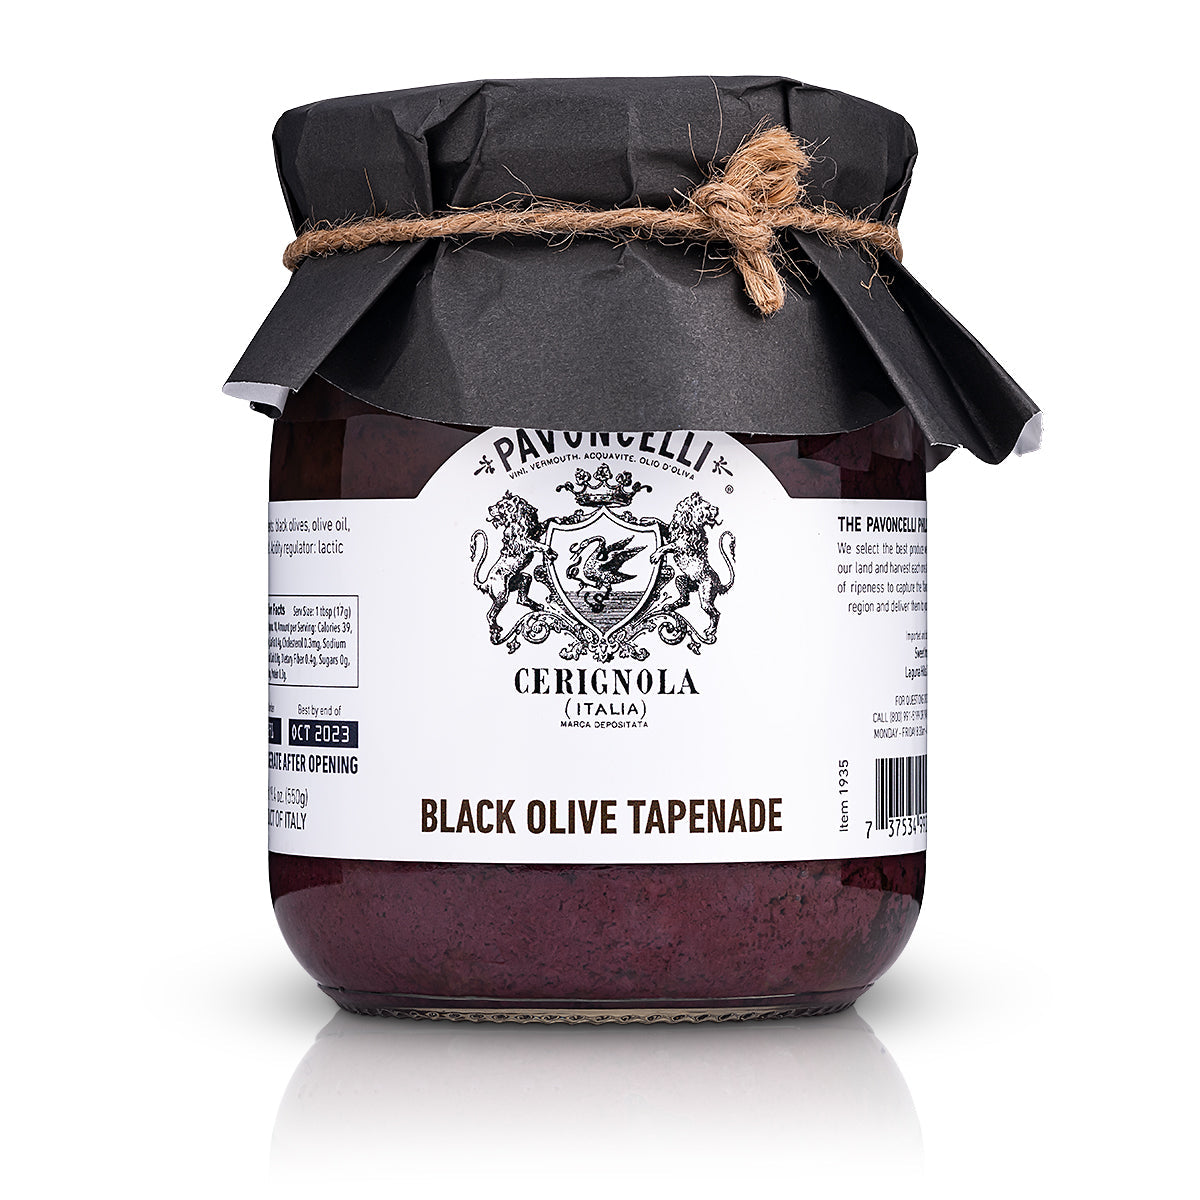 Black olive Tapenade